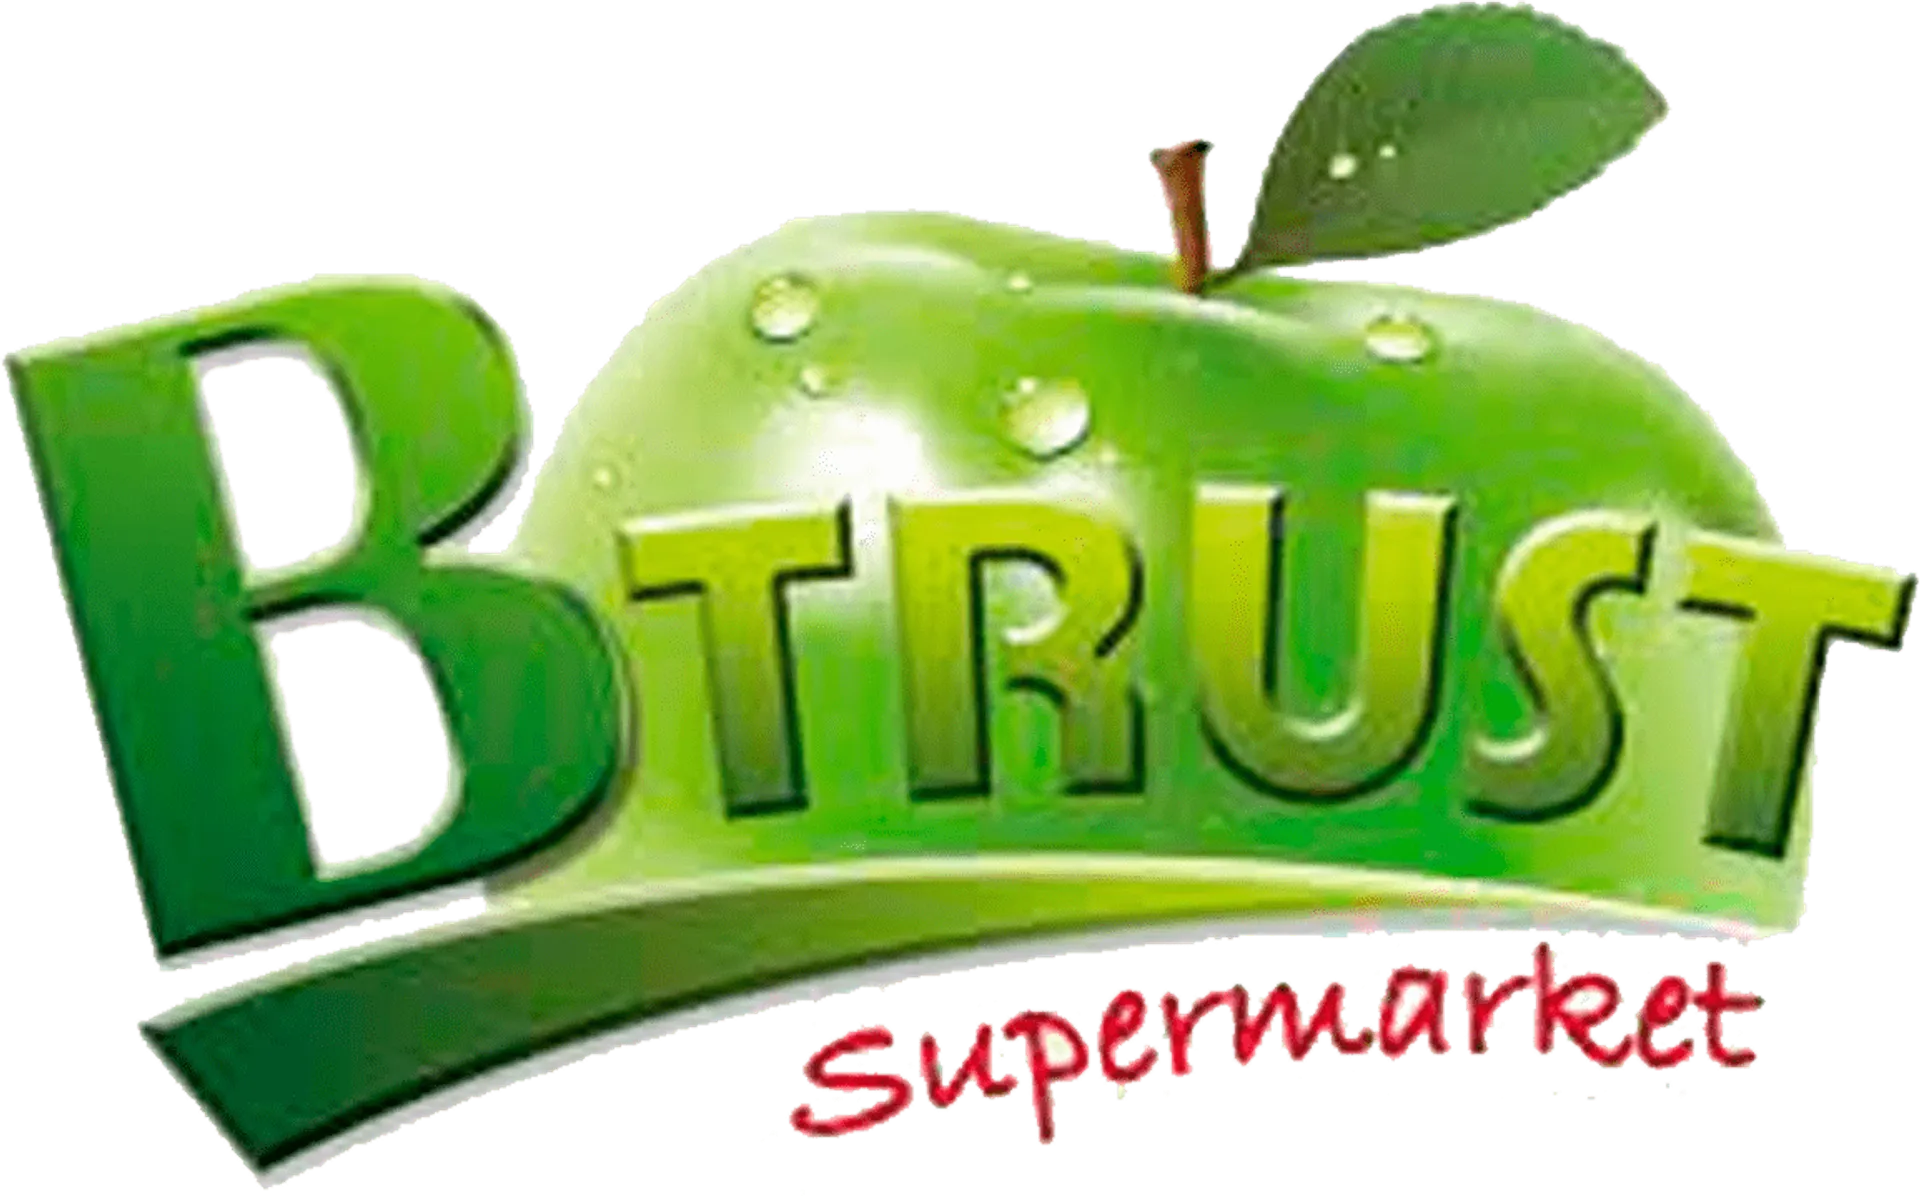 BTRUST SUPERMARKET logo